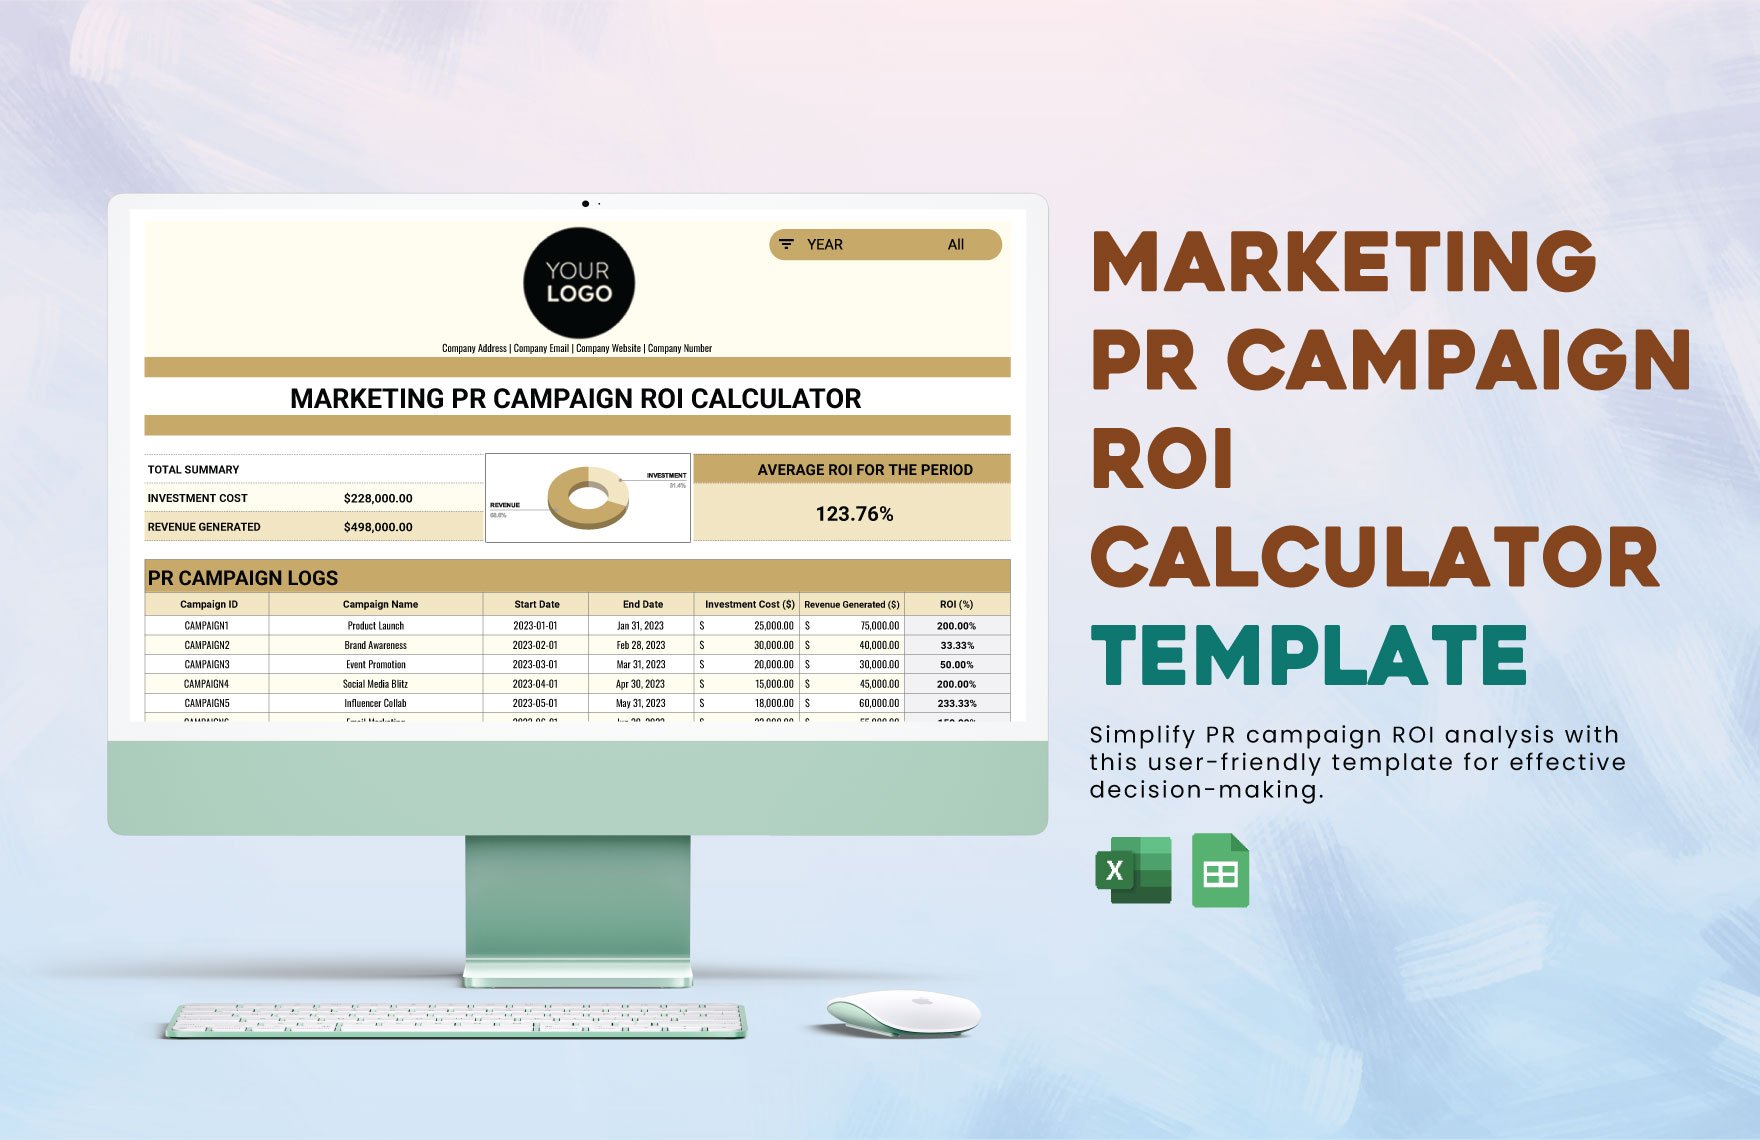 Marketing PR Campaign ROI Calculator Template